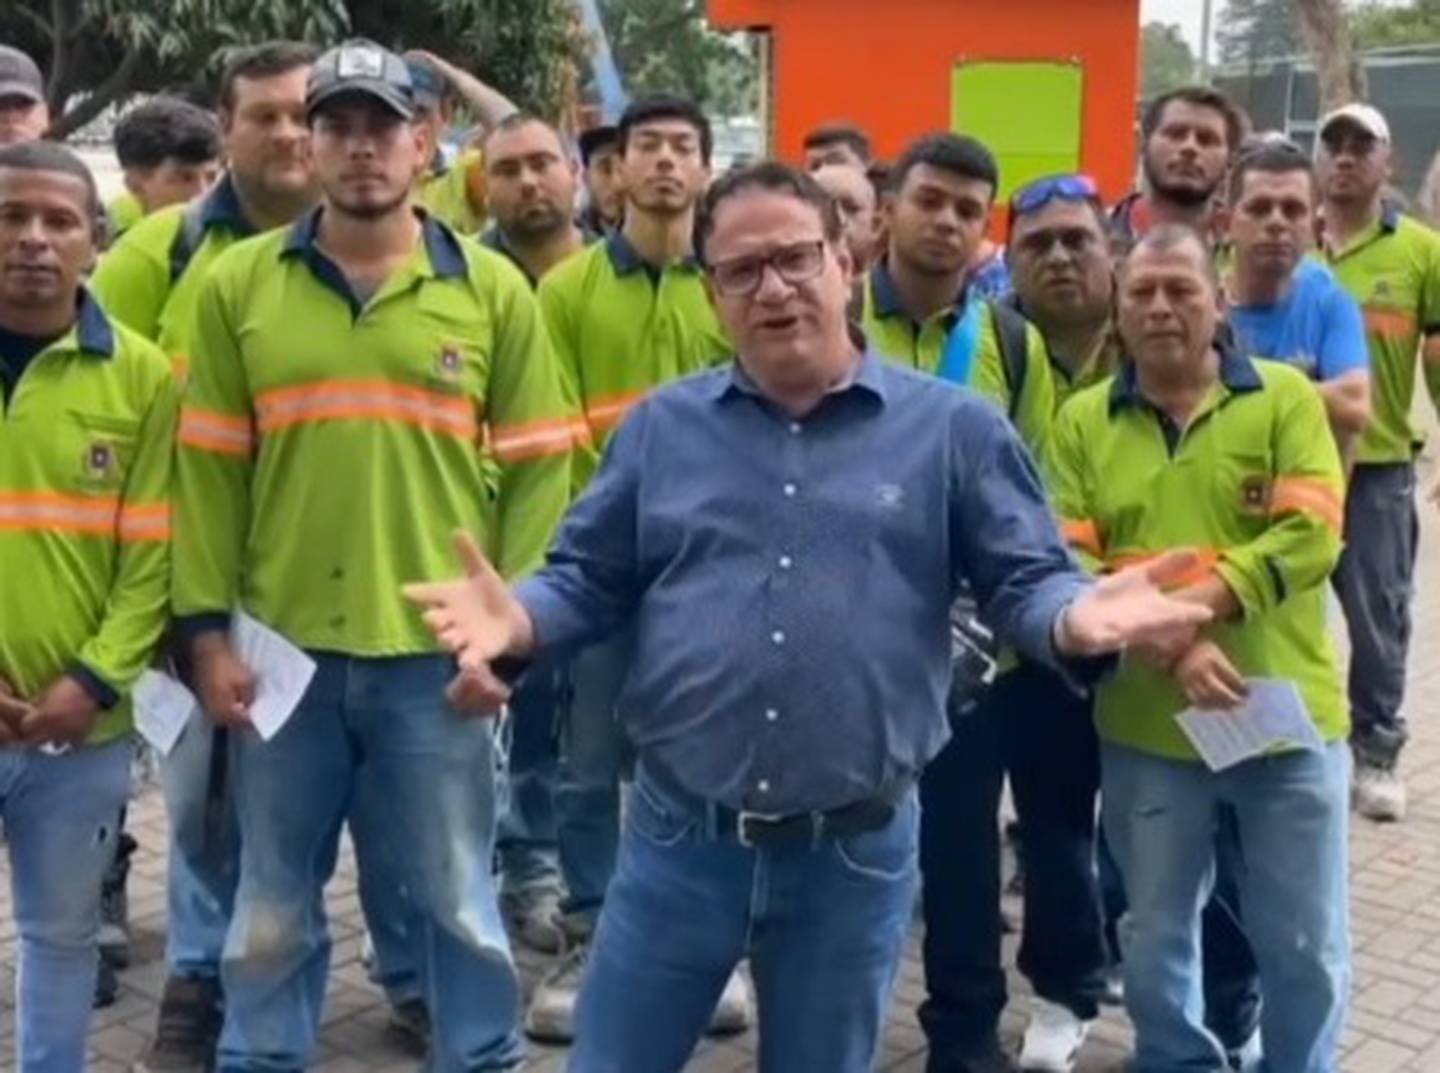 Alexander Cano, regidor de la municipalidad de San José y del Partido Liberación Nacional, realizó un video en el cual denuncia que a partir del próximo 28 de junio en la muni josefina se despedirán 60 trabajadores